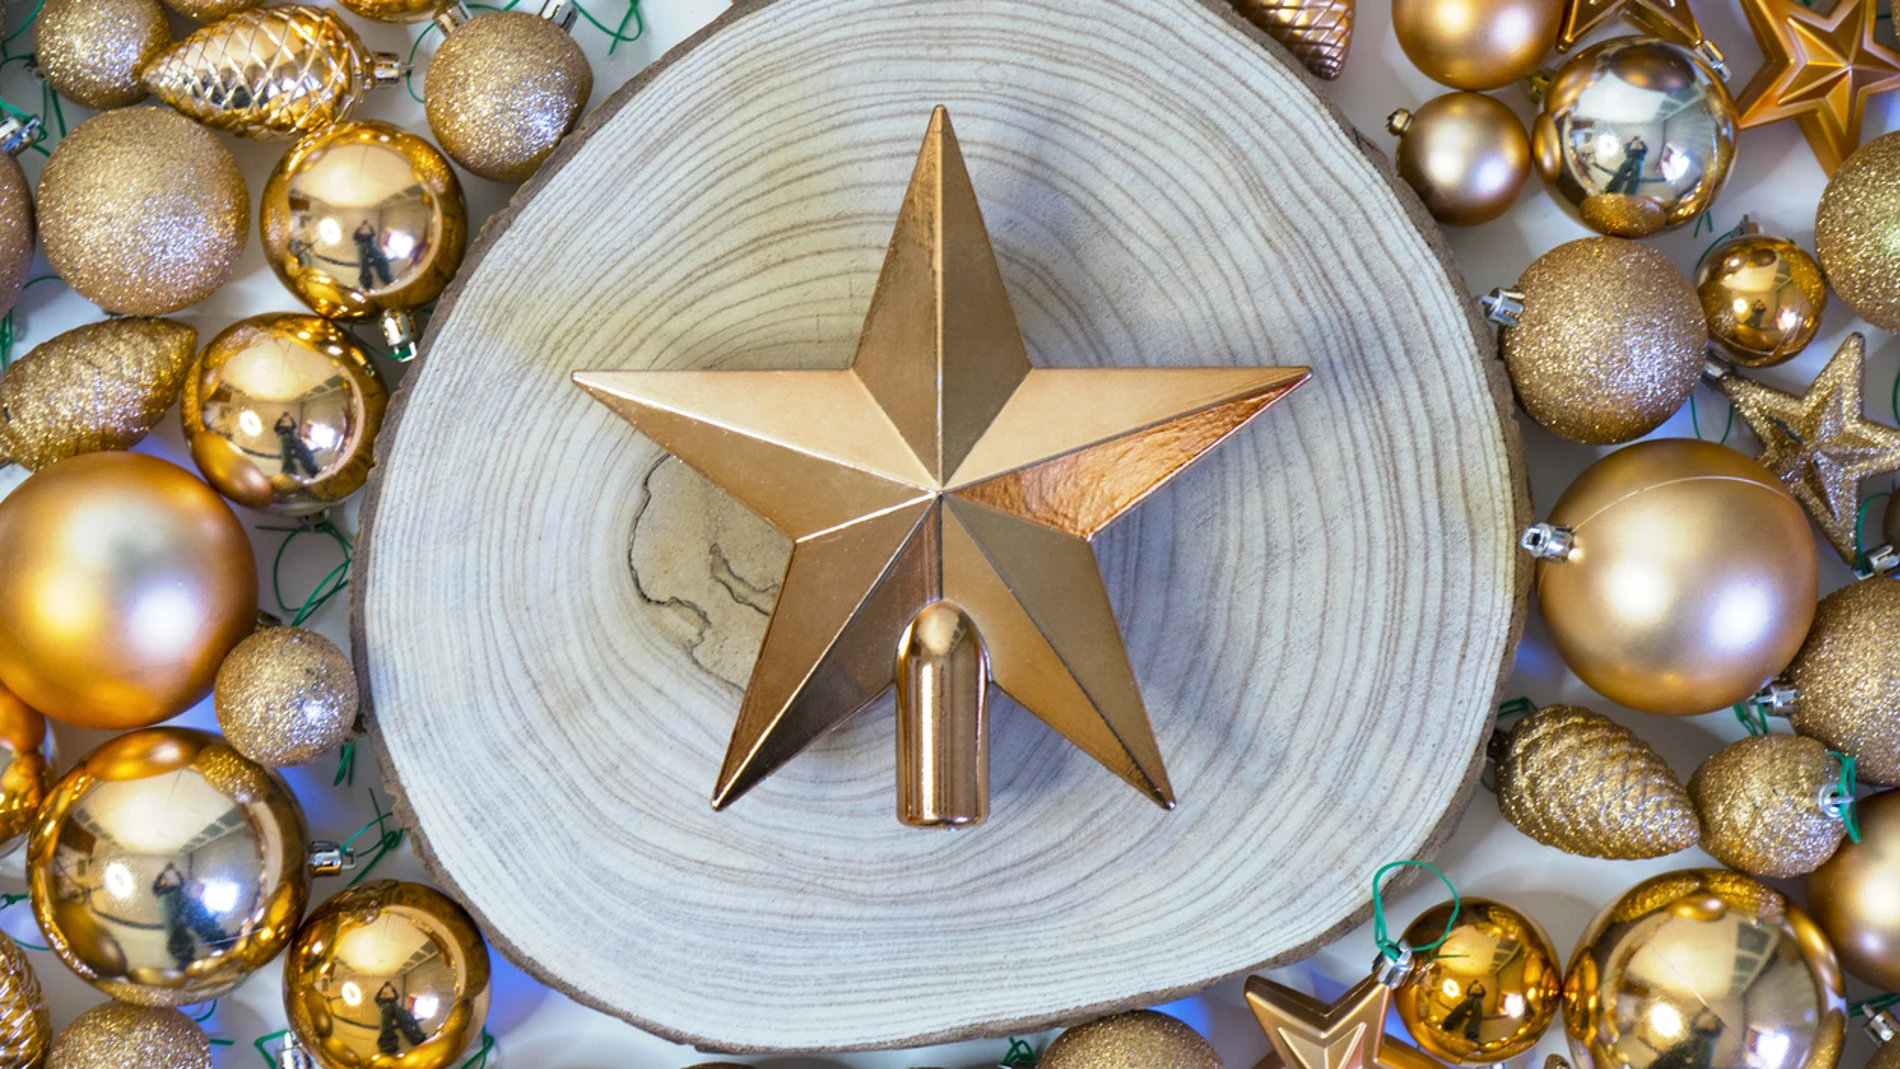 Cuál es el origen de la estrella del árbol de Navidad y qué día se pone?